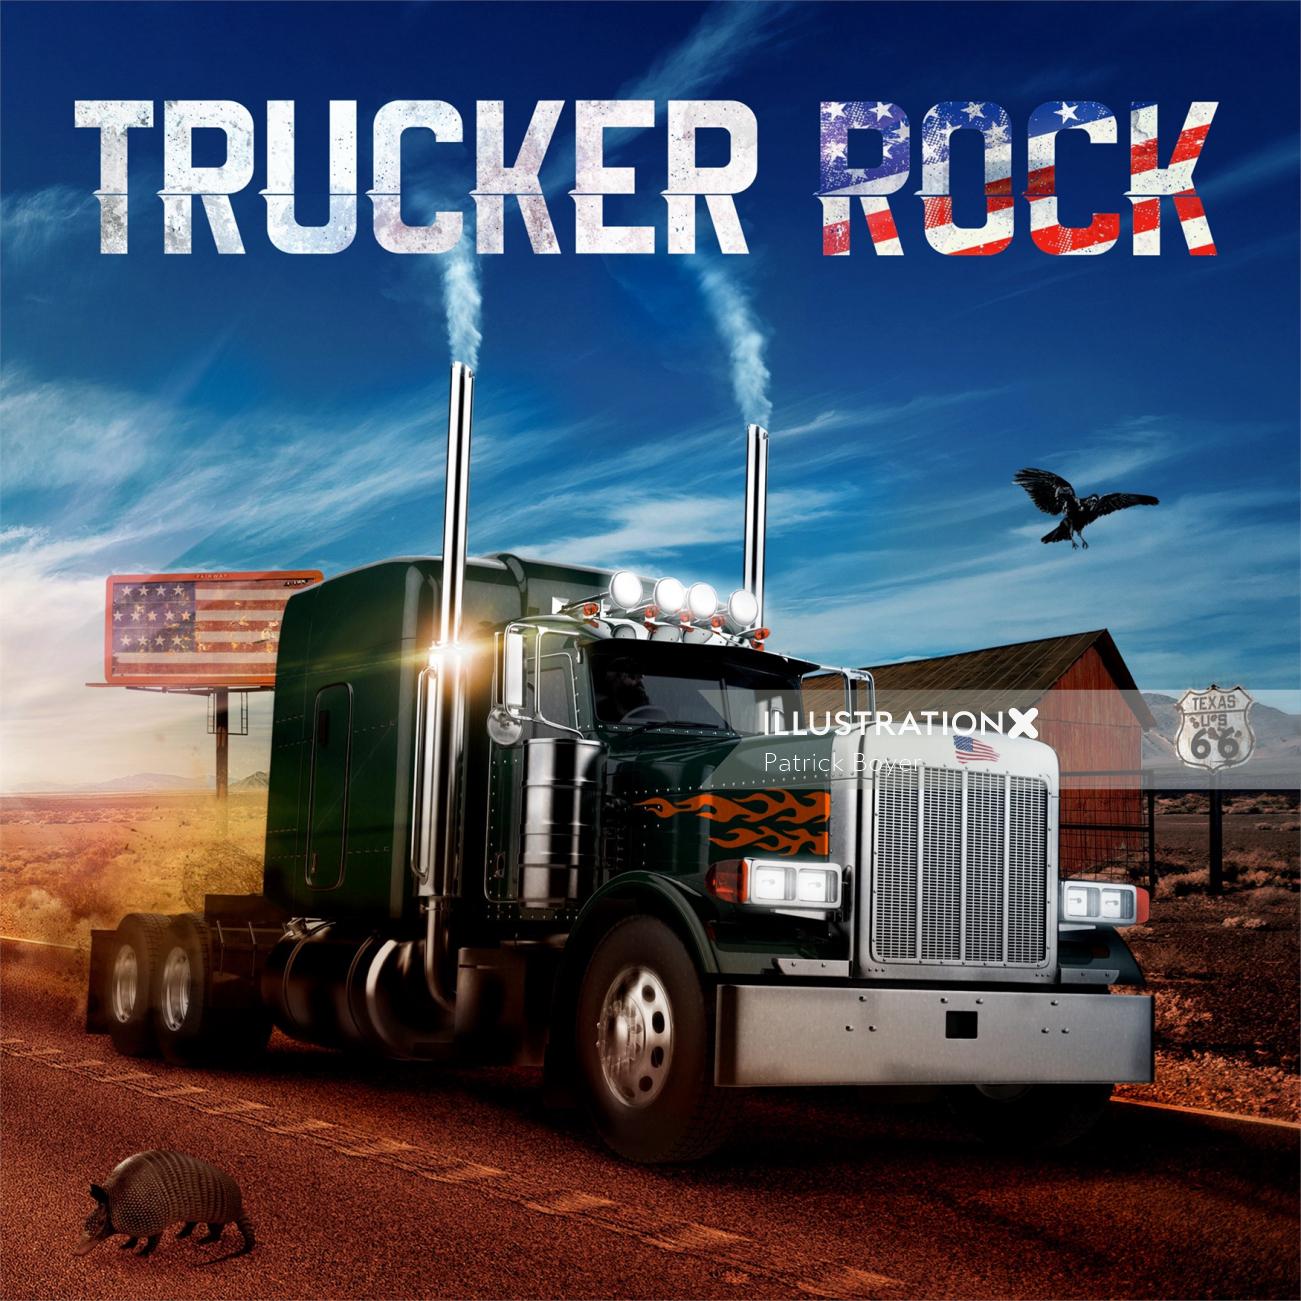 Graphic Trucker rock
